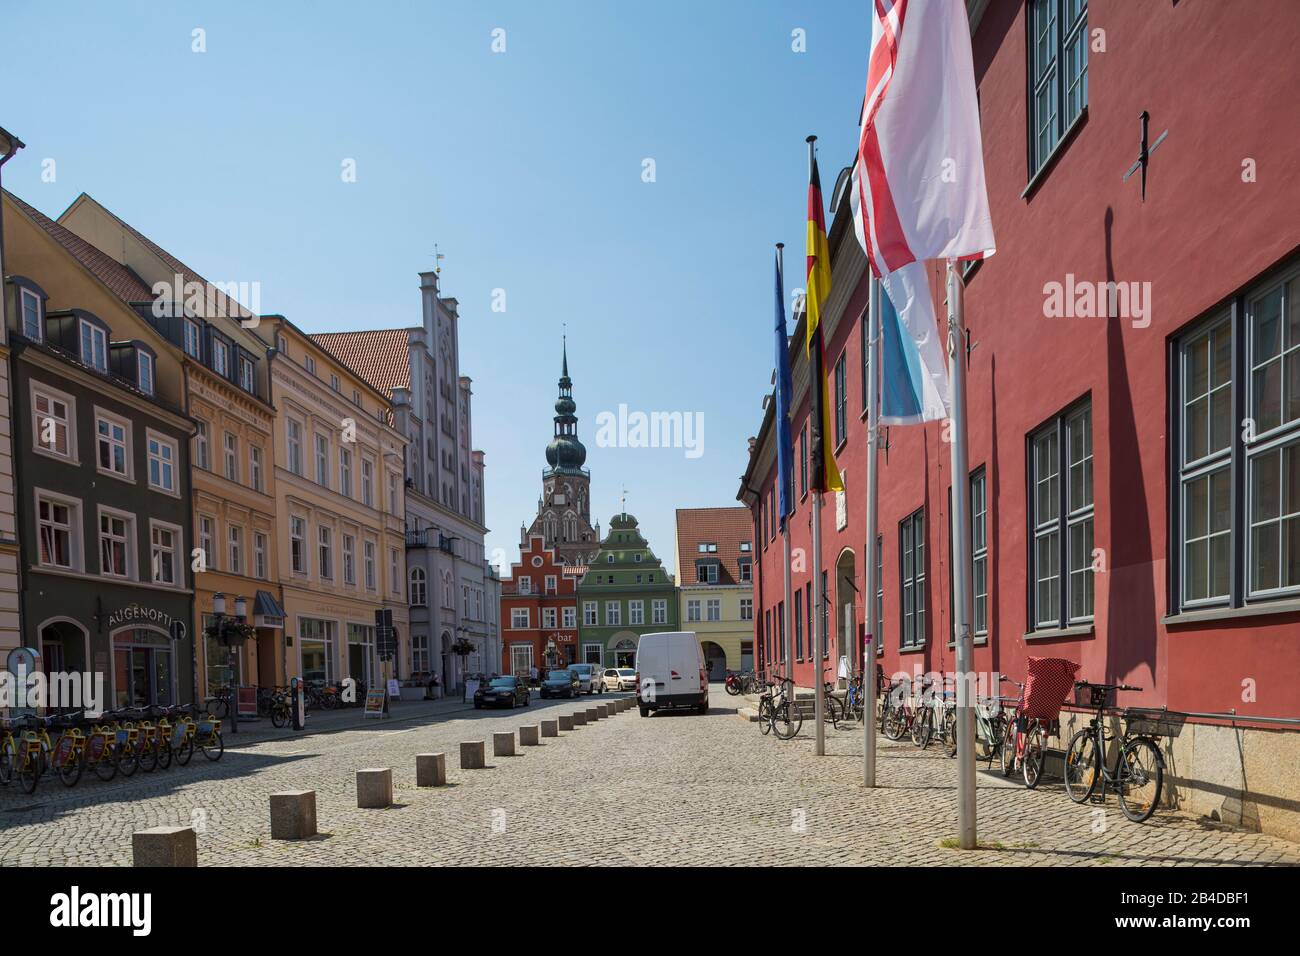 Germania, Mecklenburg-Vorpommern, Greifswald: Case nel centro della città Foto Stock